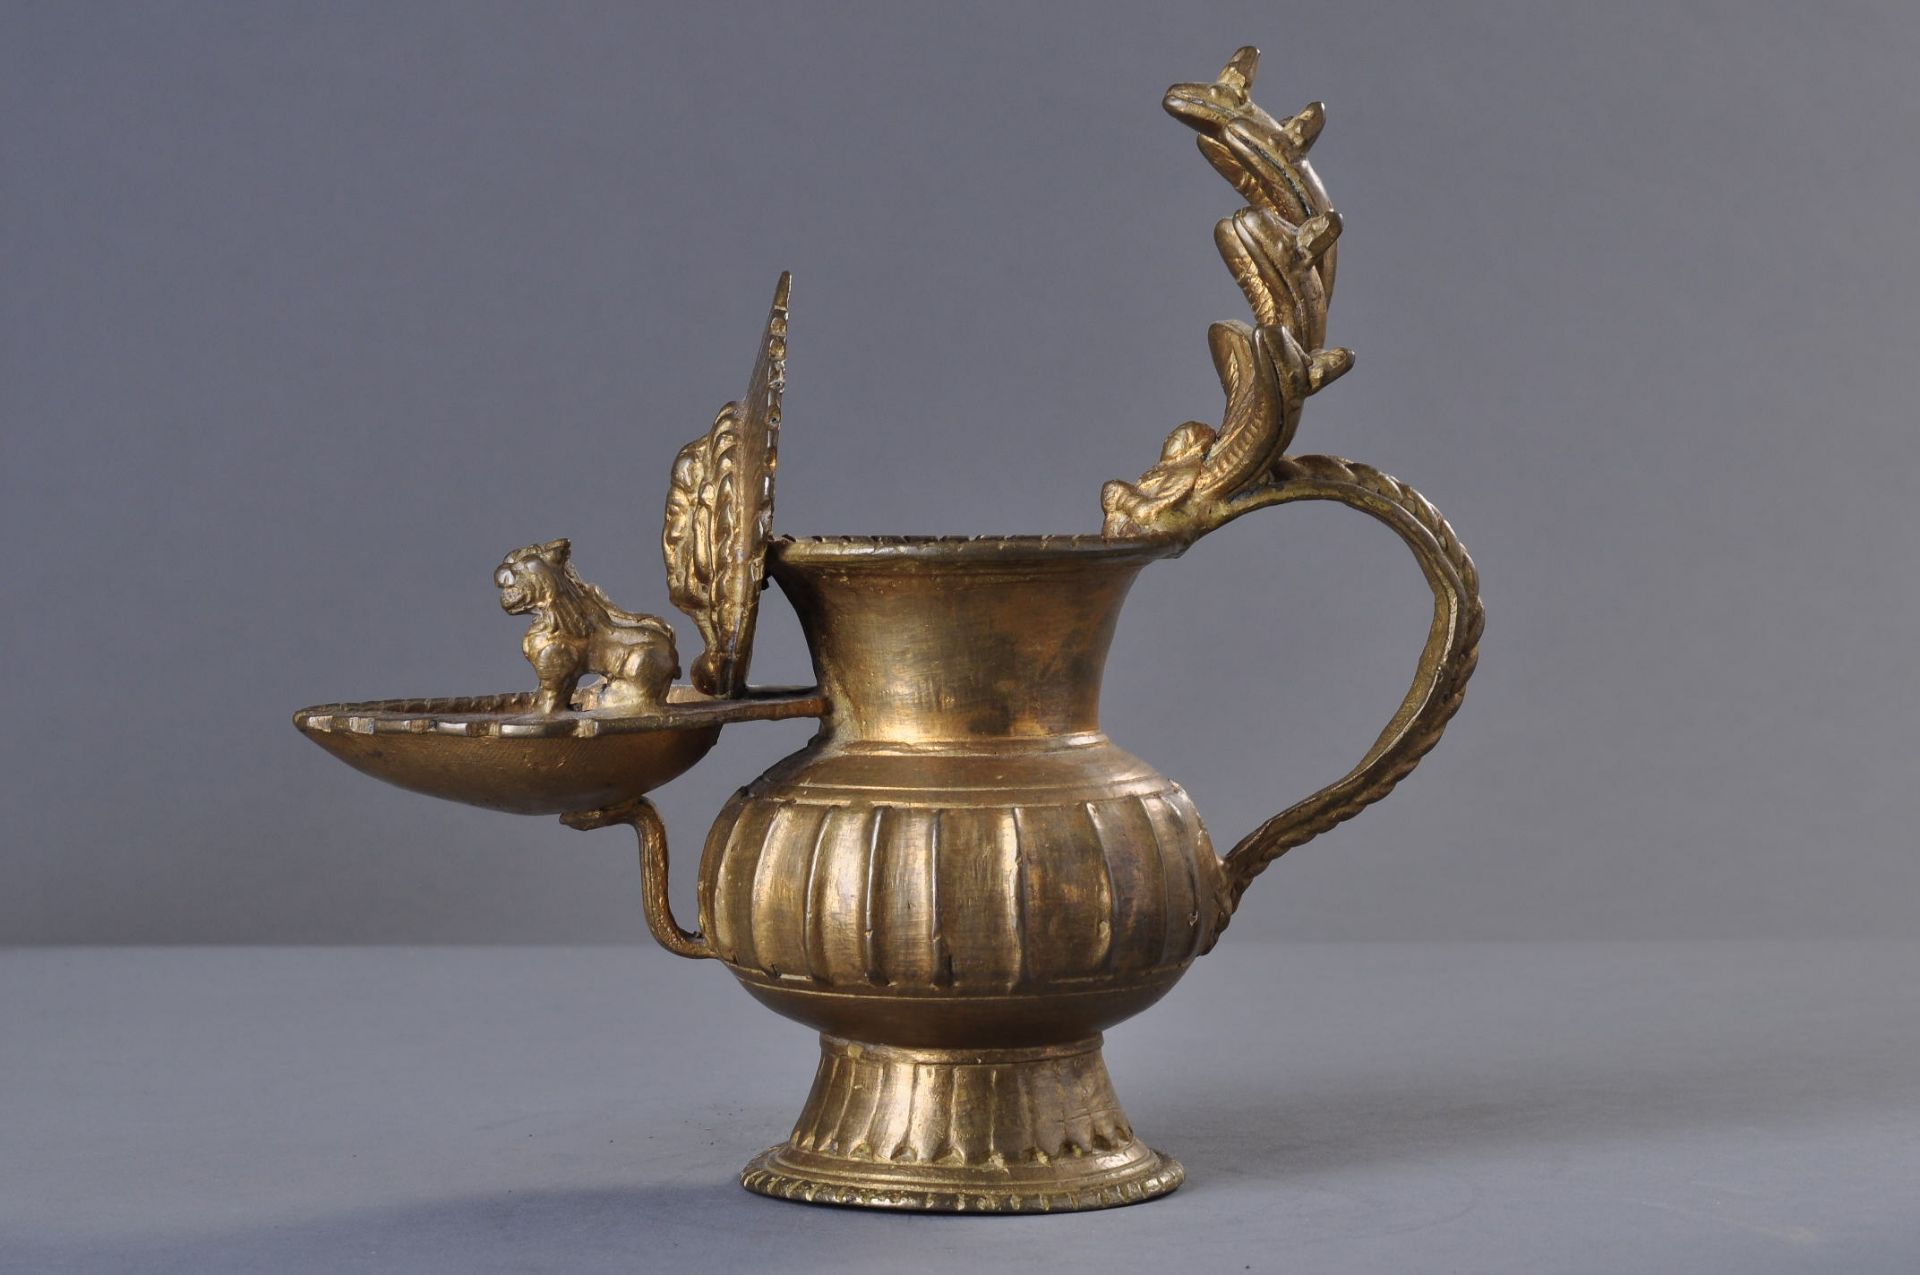 DEKORATIVES GEFÄß MIT NAGA
Bronze mit Lackvergoldung, Nepal, 20. Jh.Ausgestellter Fuß mit - Bild 3 aus 4